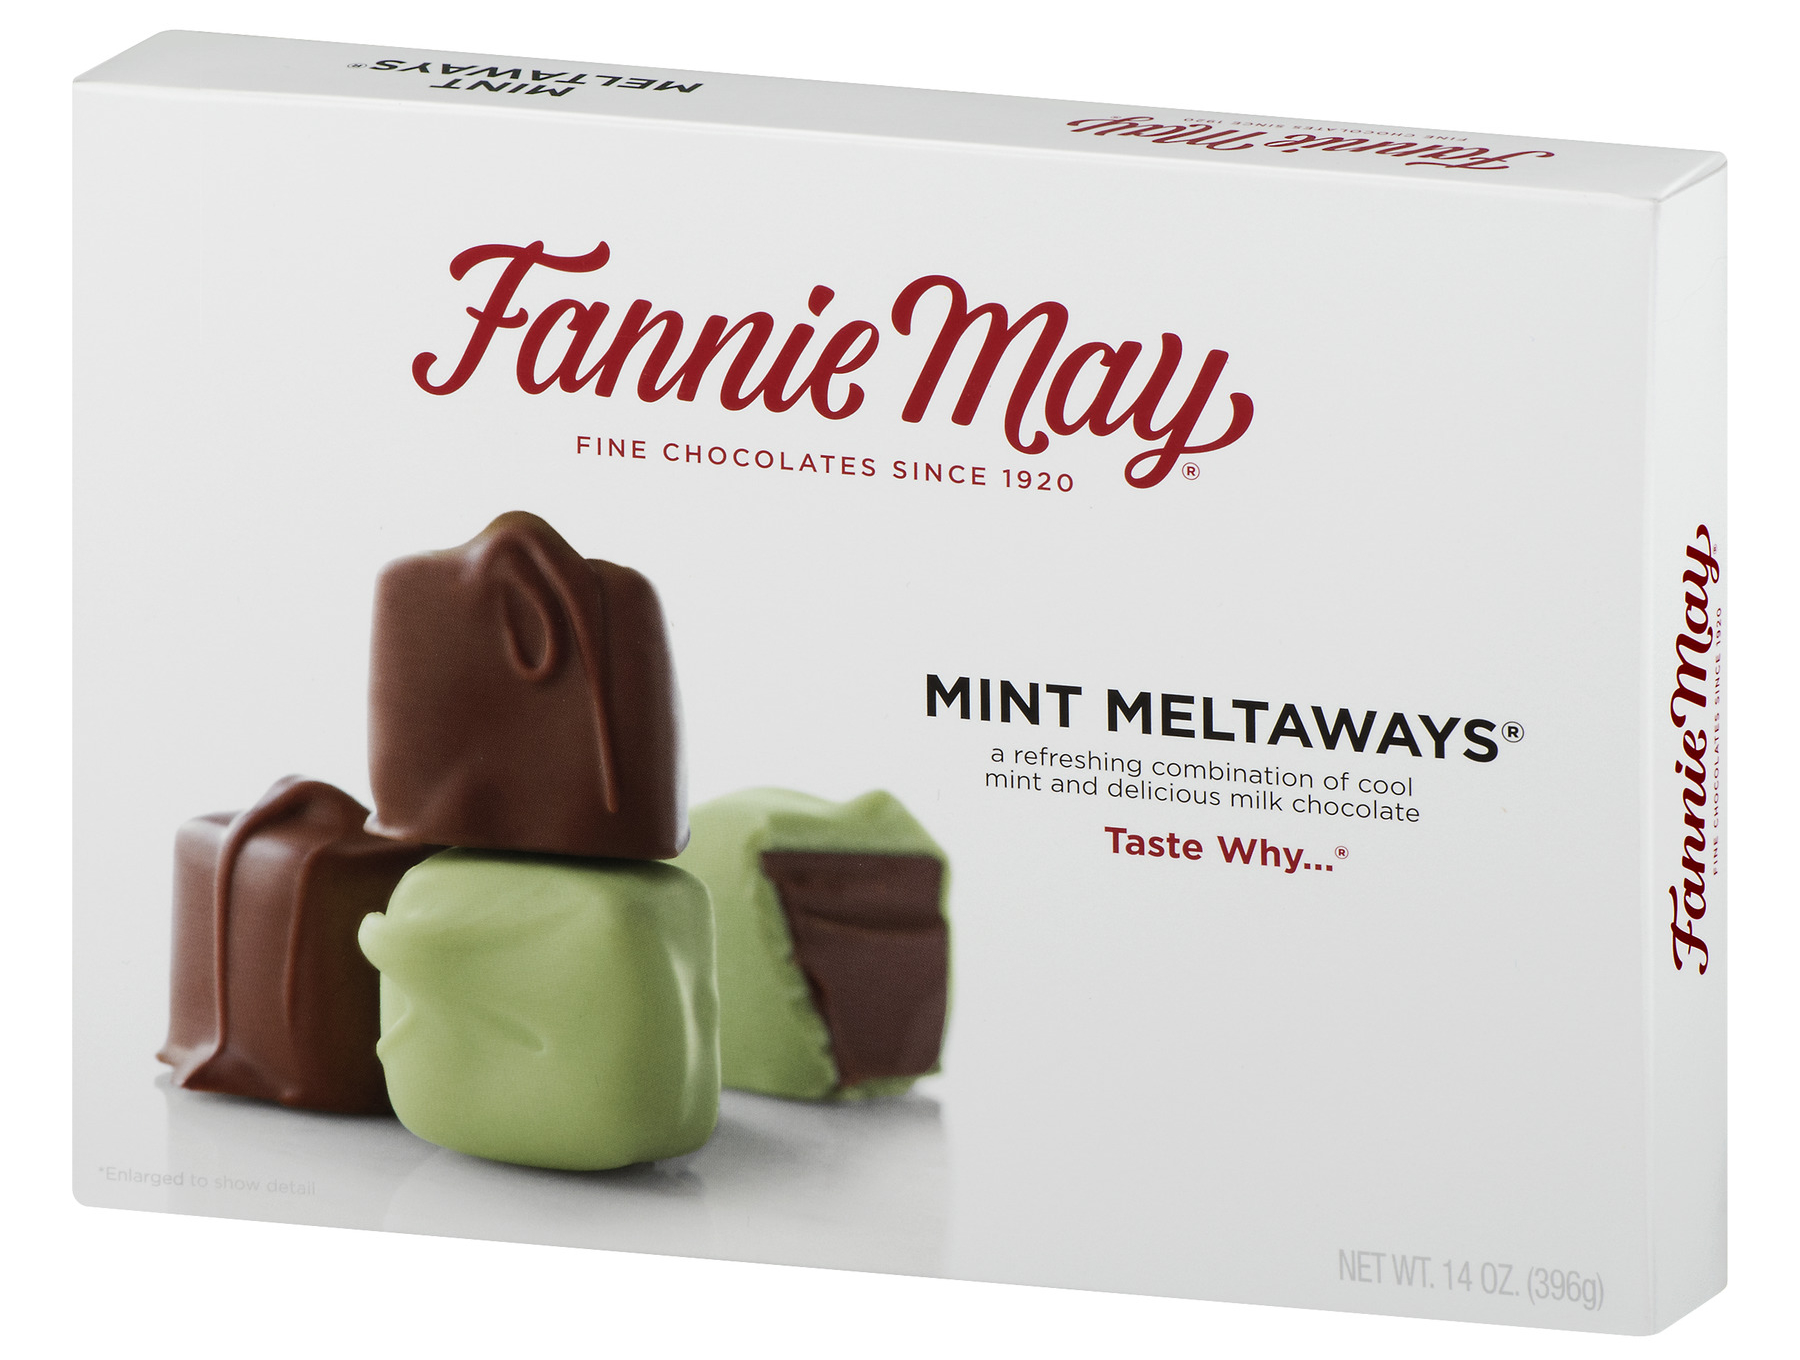 Fannie May chocolates